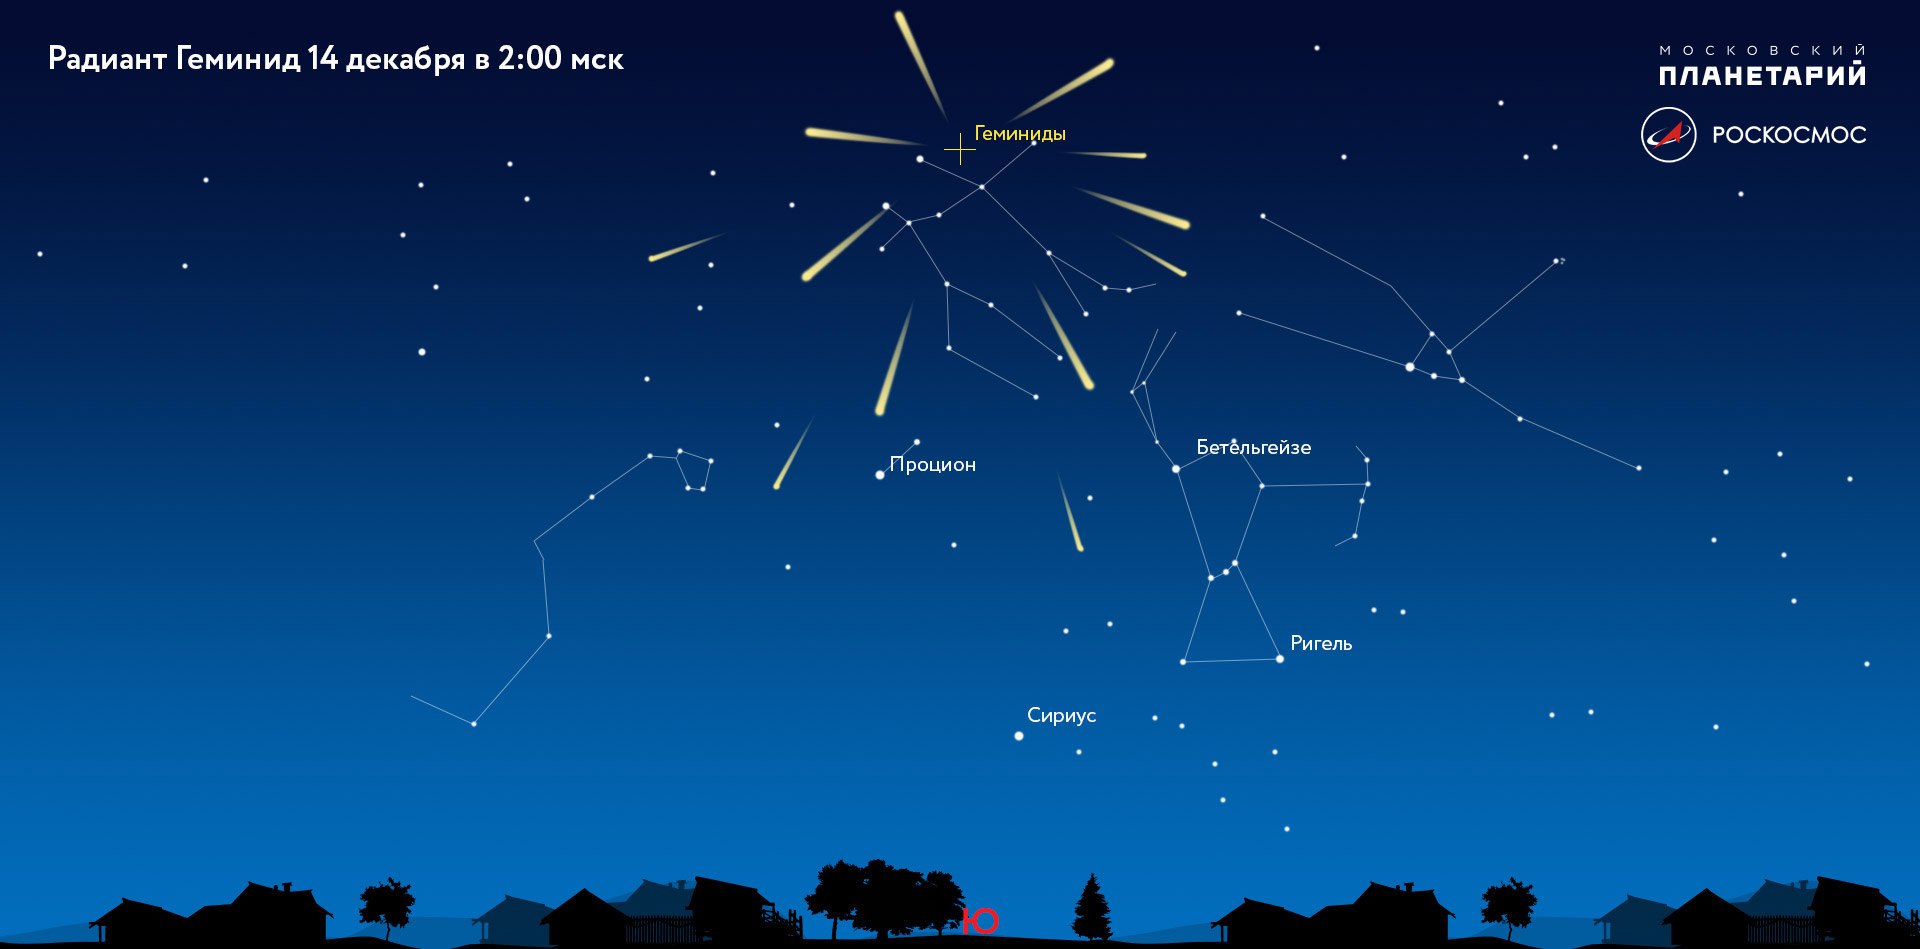 Самый сильный звездный дождь в году: пик метеорного потока Геминиды можно будет наблюдать ночью 14 декабря